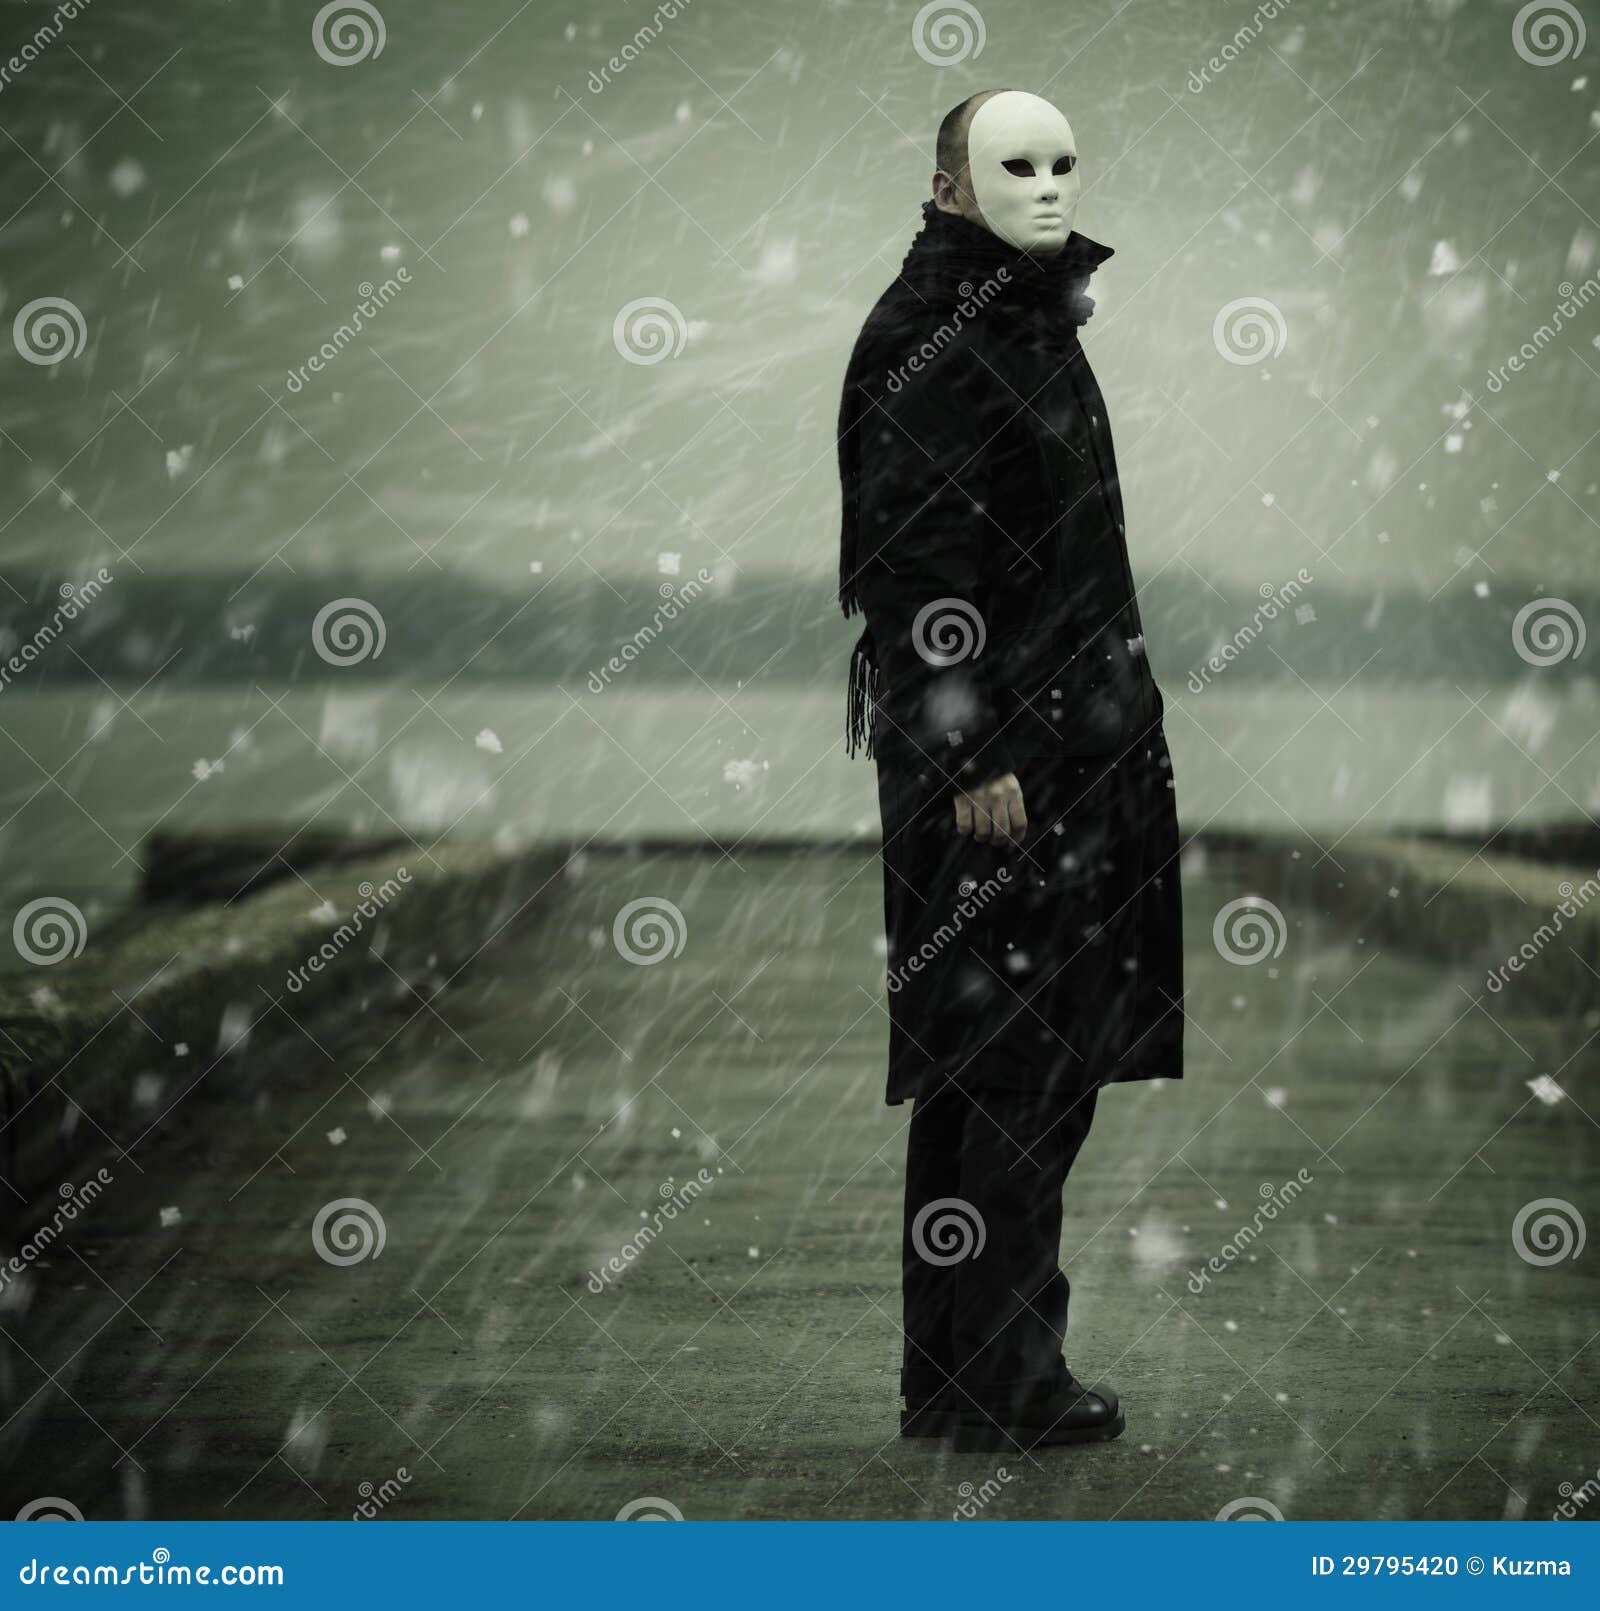 Mann mit weißer Maske. Anonymitätskonzept, bemannen nahe dem Fluss und dem Schnee f/x